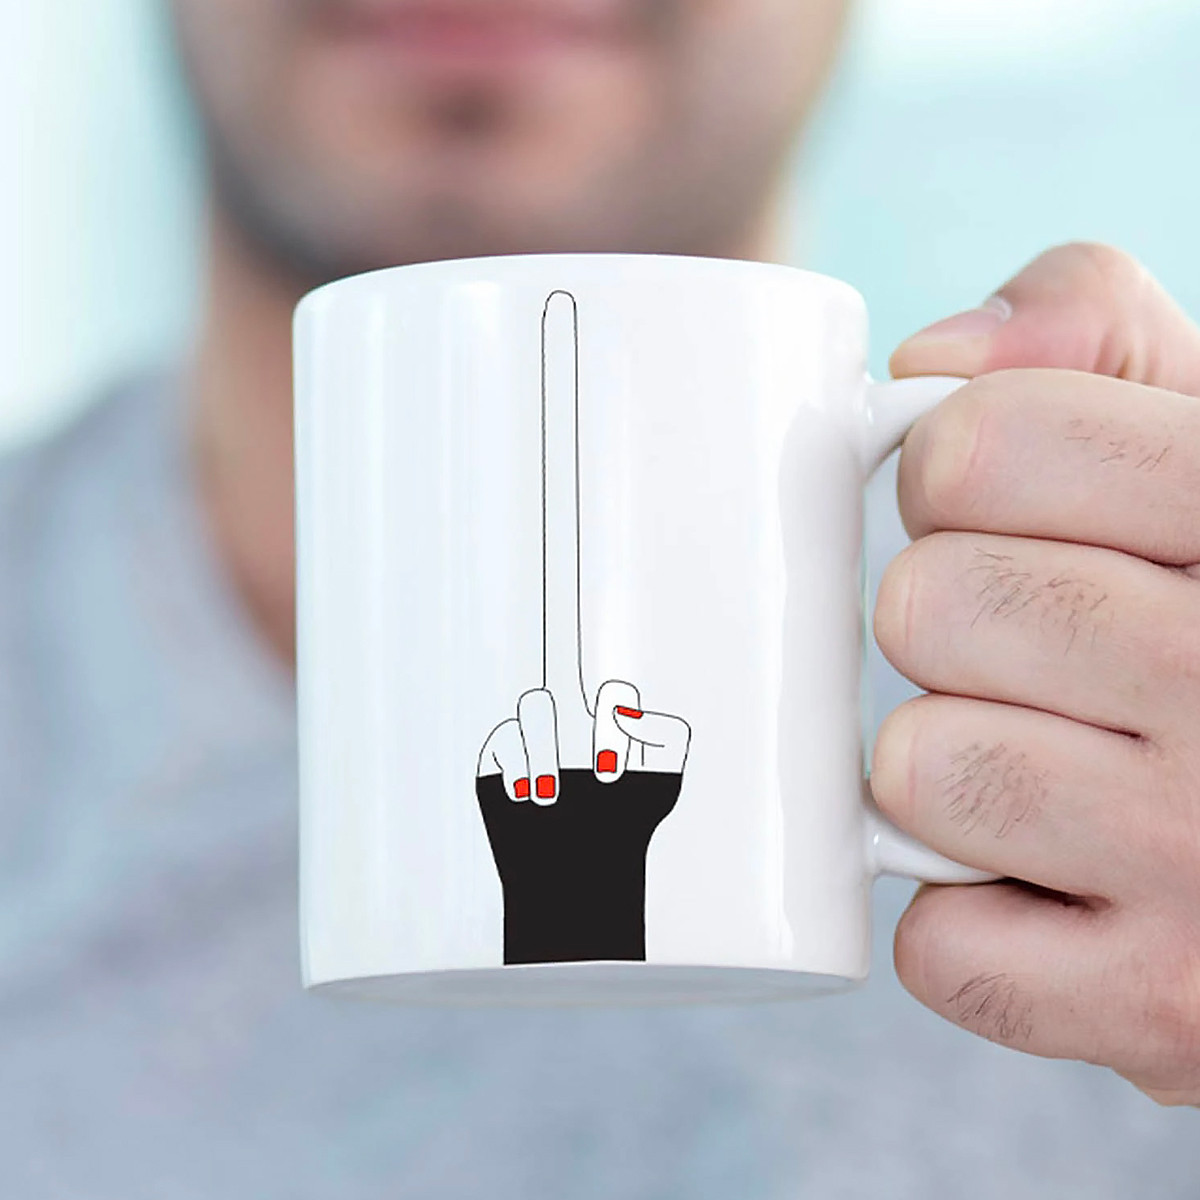 Tasse à café,Mug doigt d'honneur,Tasse de thé en céramique drôle